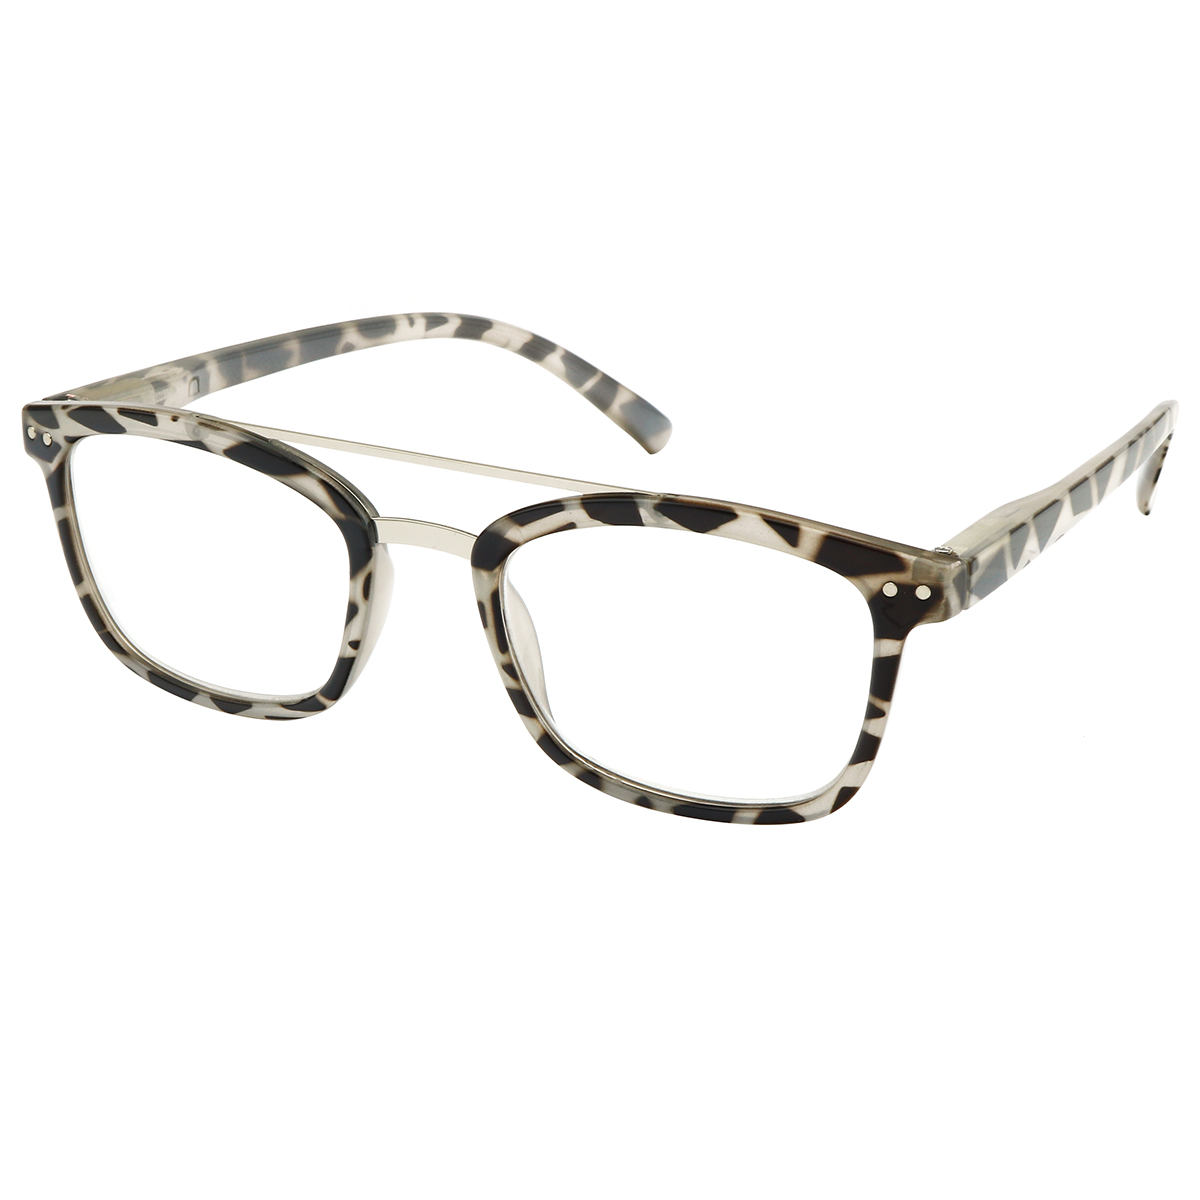 Penn - Aviator Gray-Tortoiseshell Reading Glasses for Women